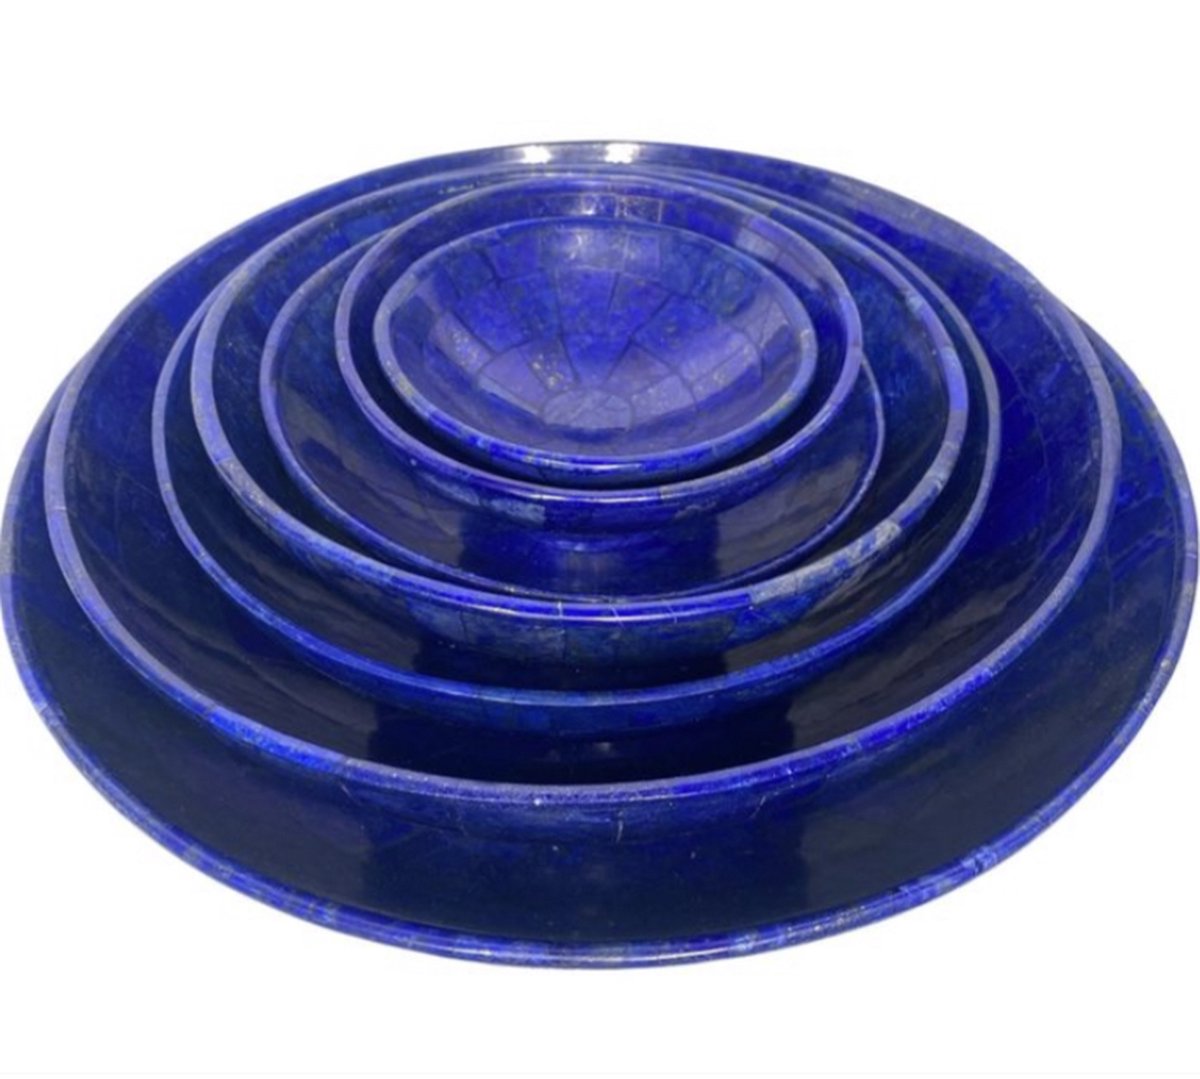 A+++ Natuurlijke Lapis Lazuli bowls set 6x/Kommen set 6x 120 mm/300 mmHandgemaakt - Blauw - Helend